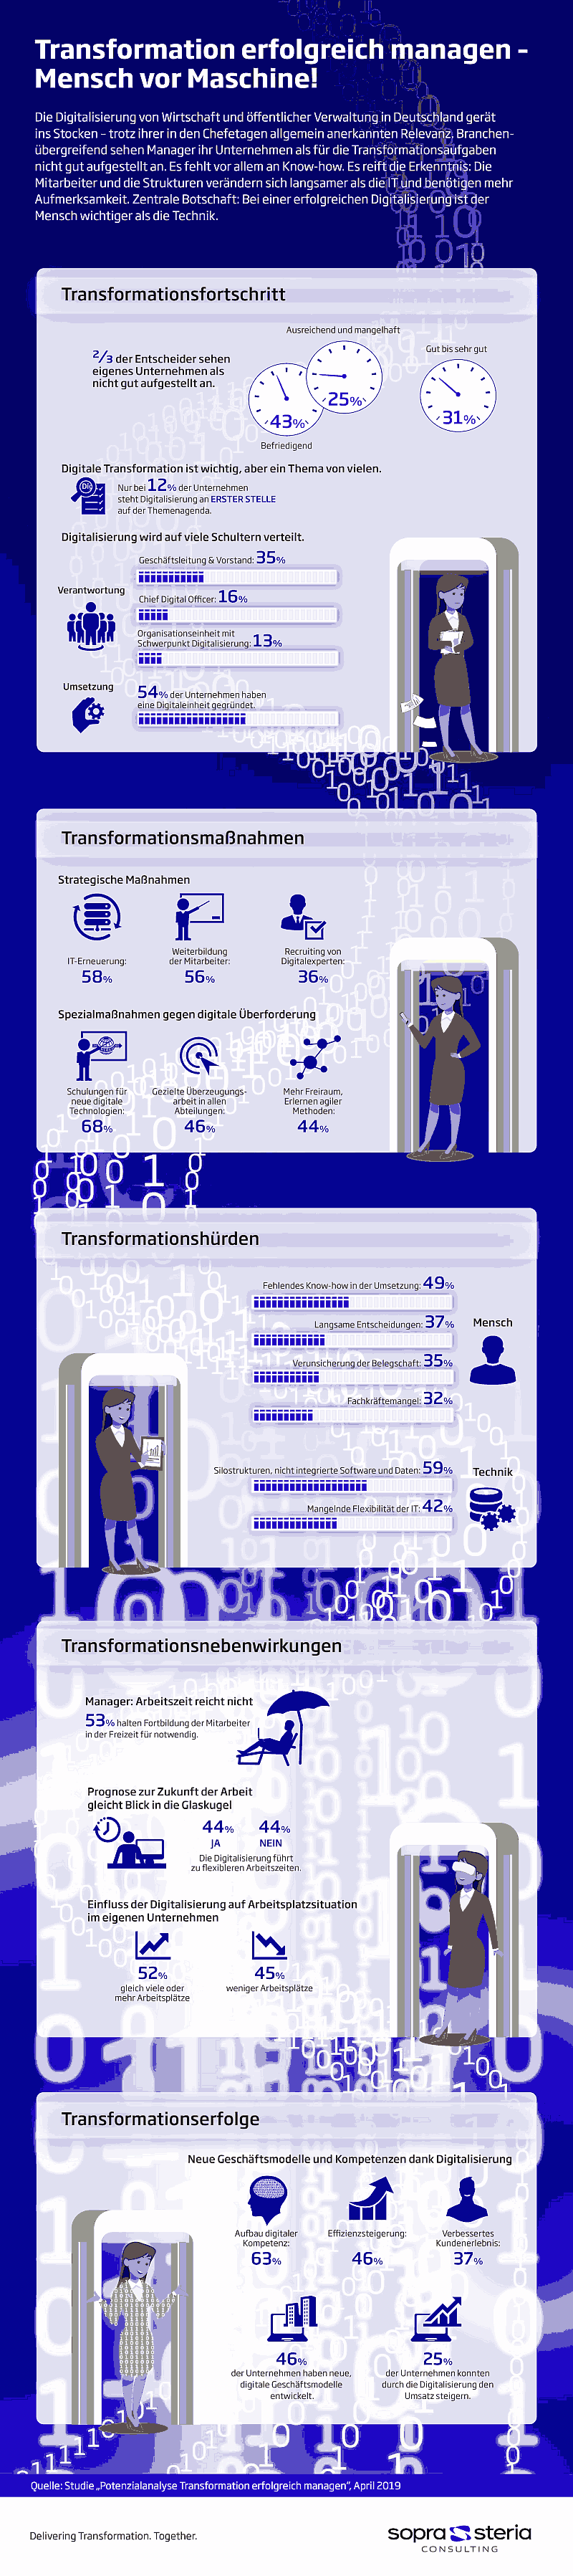 Infografik: Studie zur digitalen Transformation